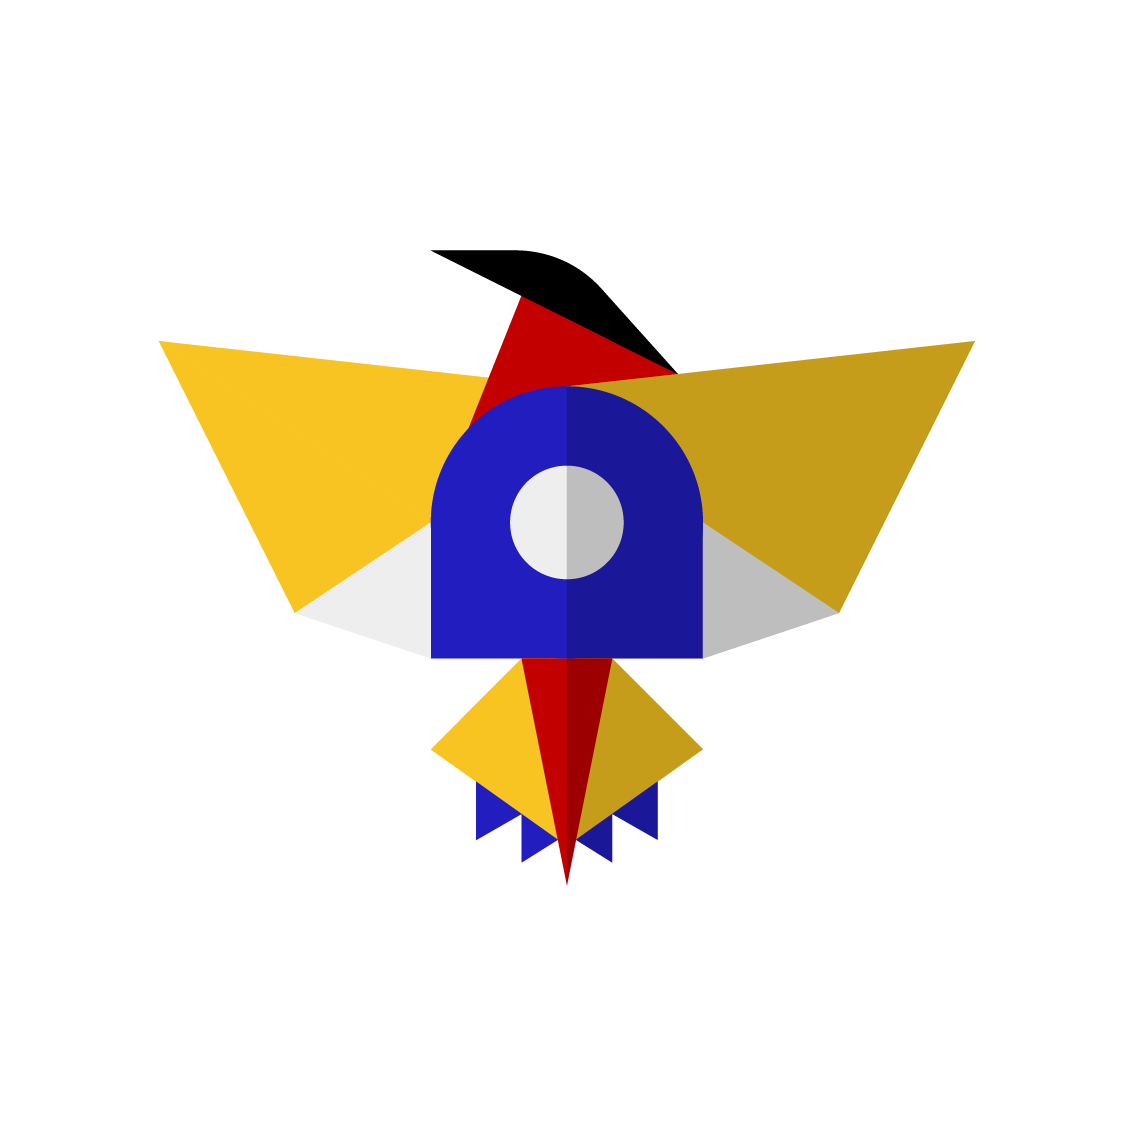 Markut Rekli İkon Logosu, PNG Formatında